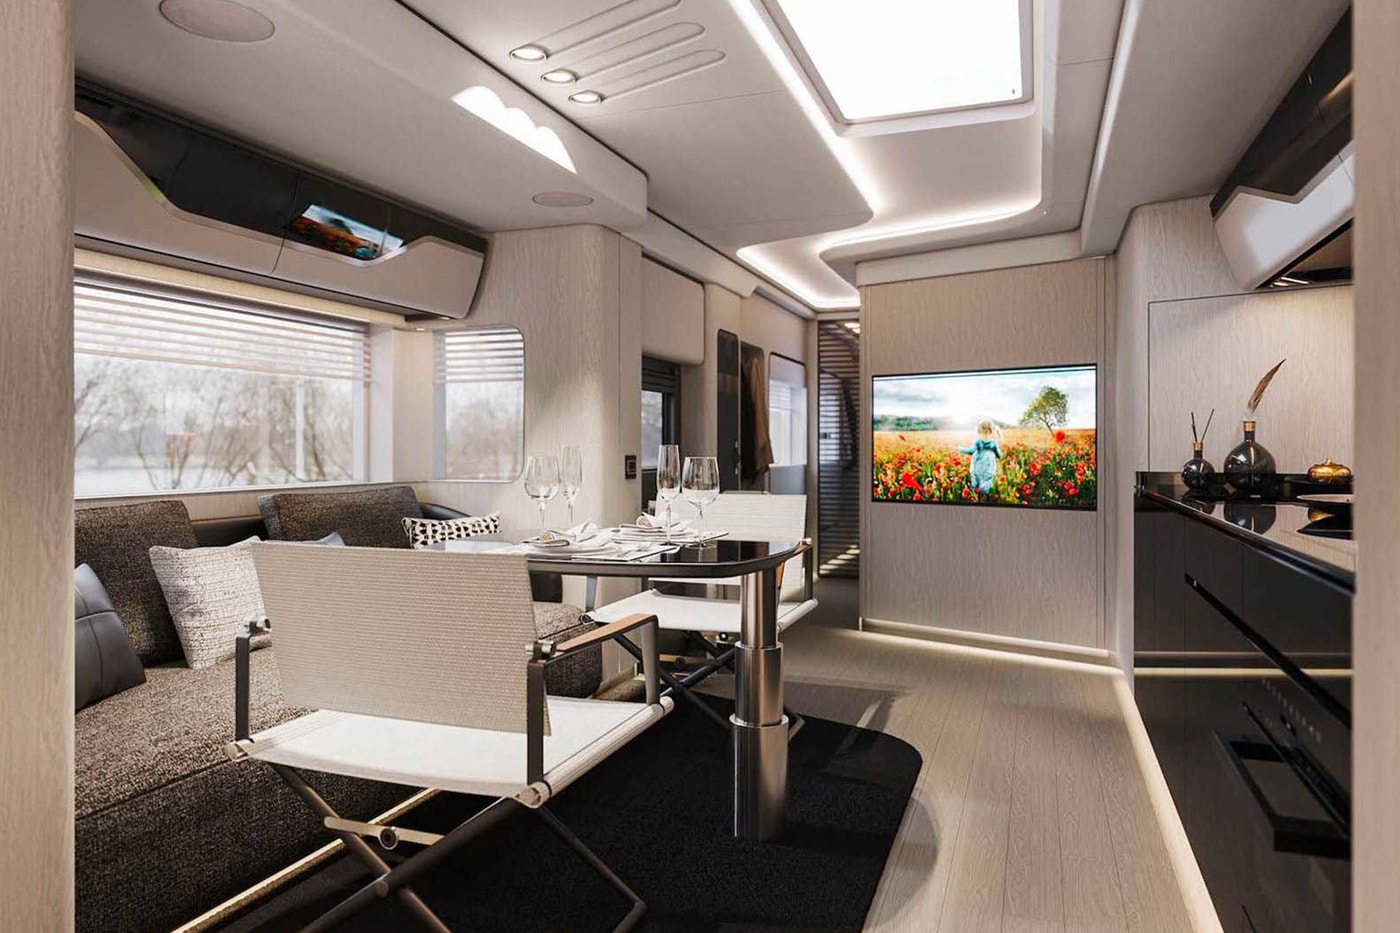 フェラーリも収納できるラグジュアリーなキャンピングカーが登場 Dembell Reveals a Luxurious Land Yacht small garage side package room king size bed Actros solar panel suite 